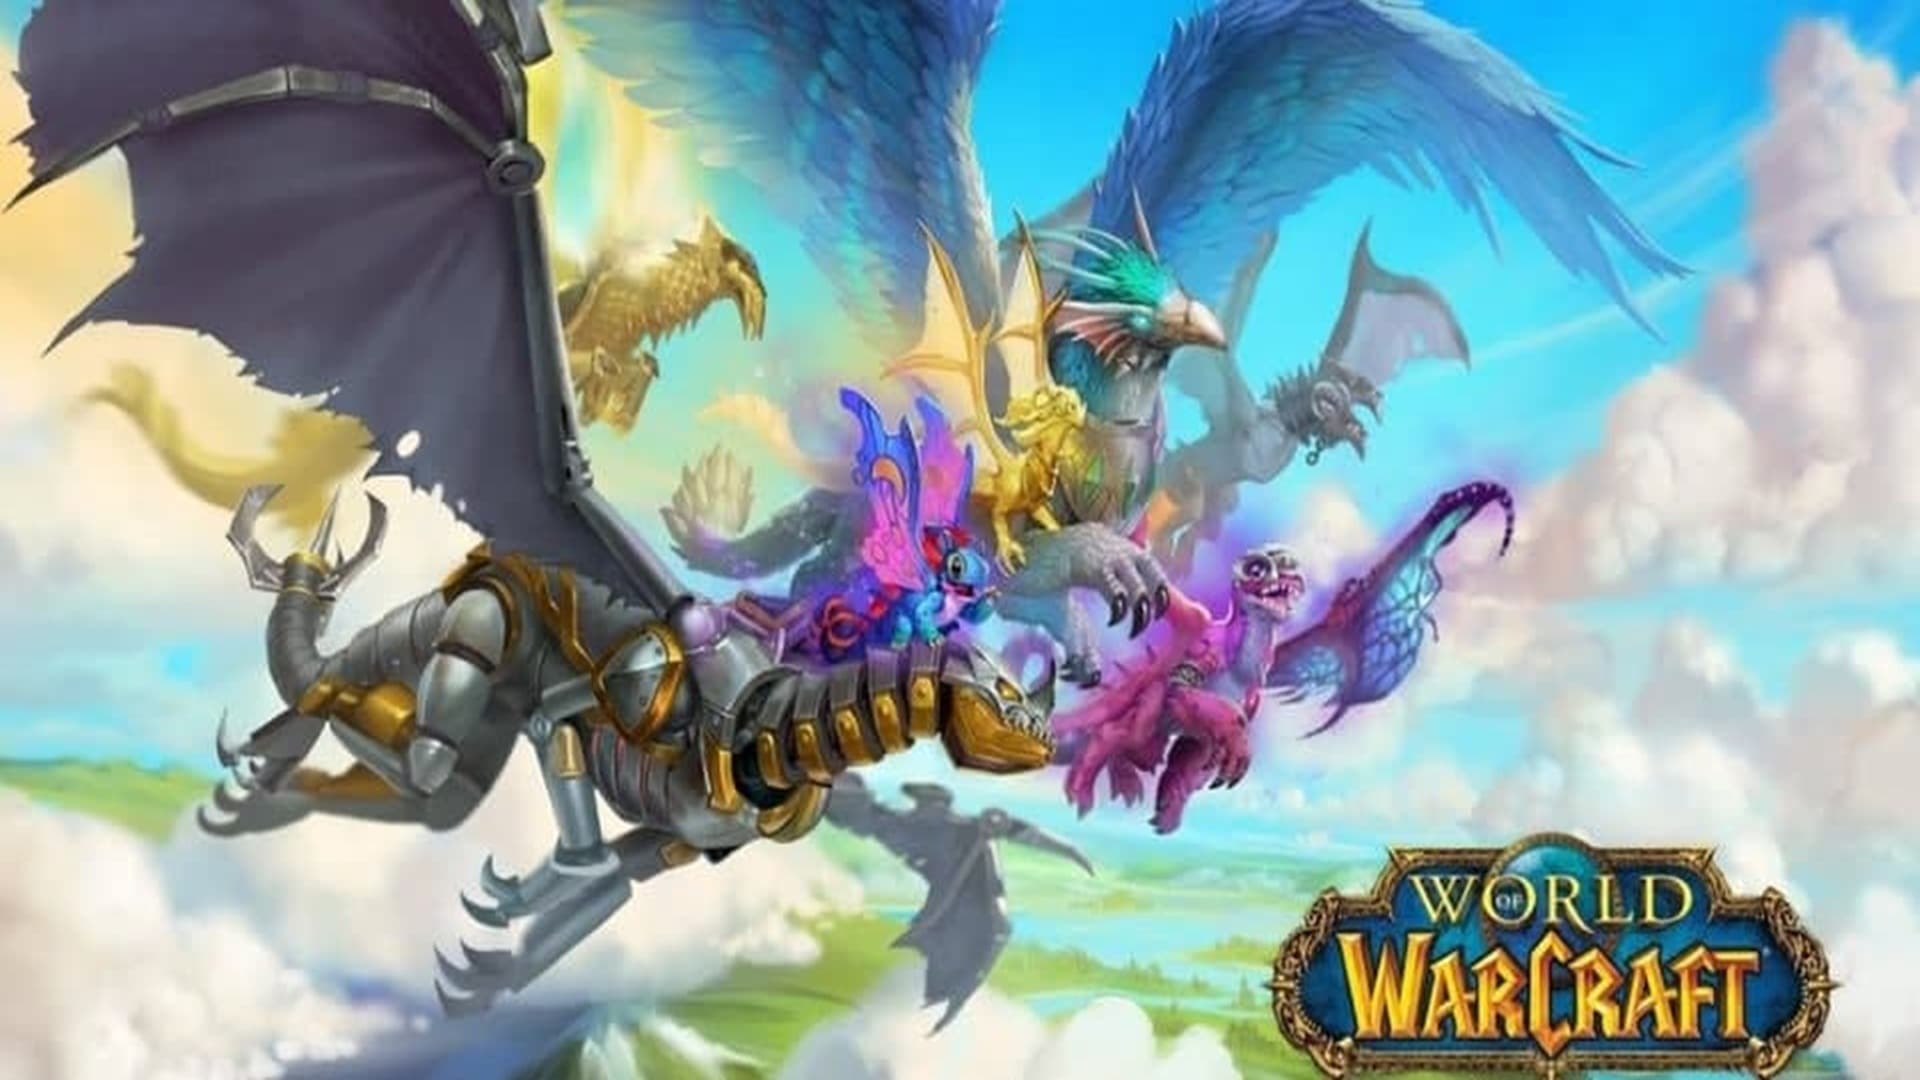 Algunos artículos de la tienda de World of Warcraft podrían indicar una nueva expansión con temática de dragones, GamersRD